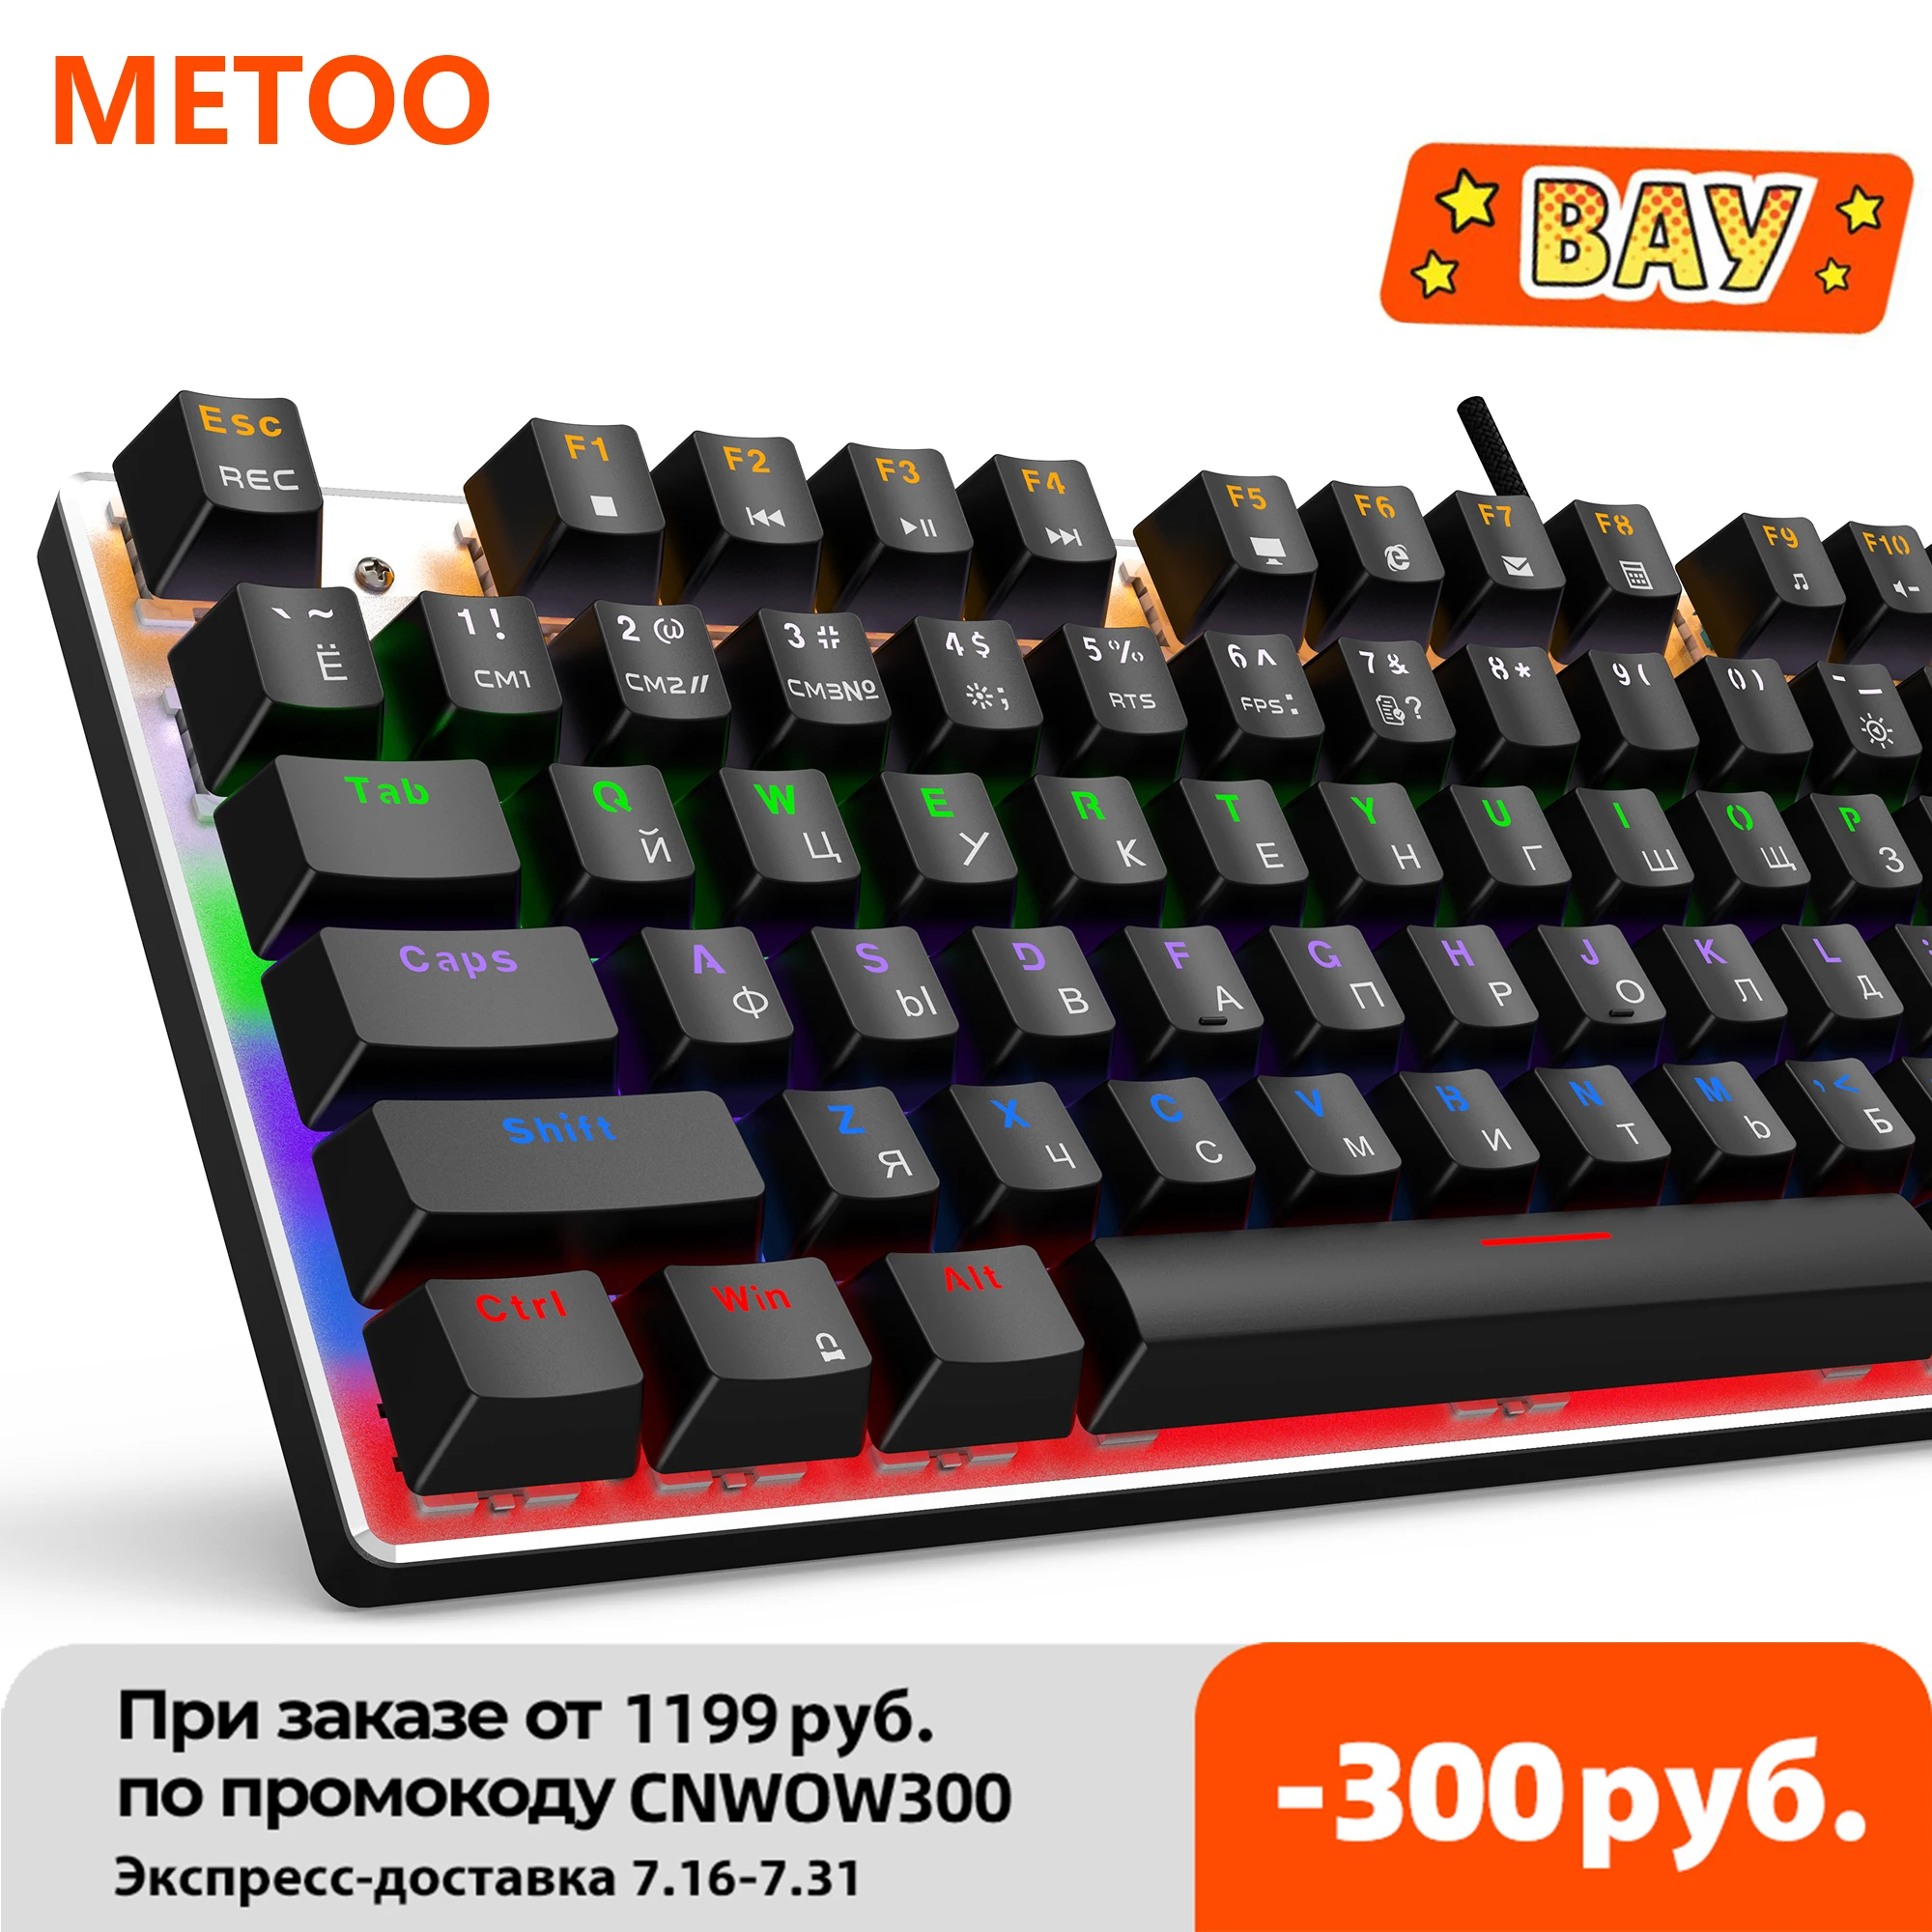 

Клавиатура Metoo игровая Механическая Проводная с подсветкой, русская/английская раскладка